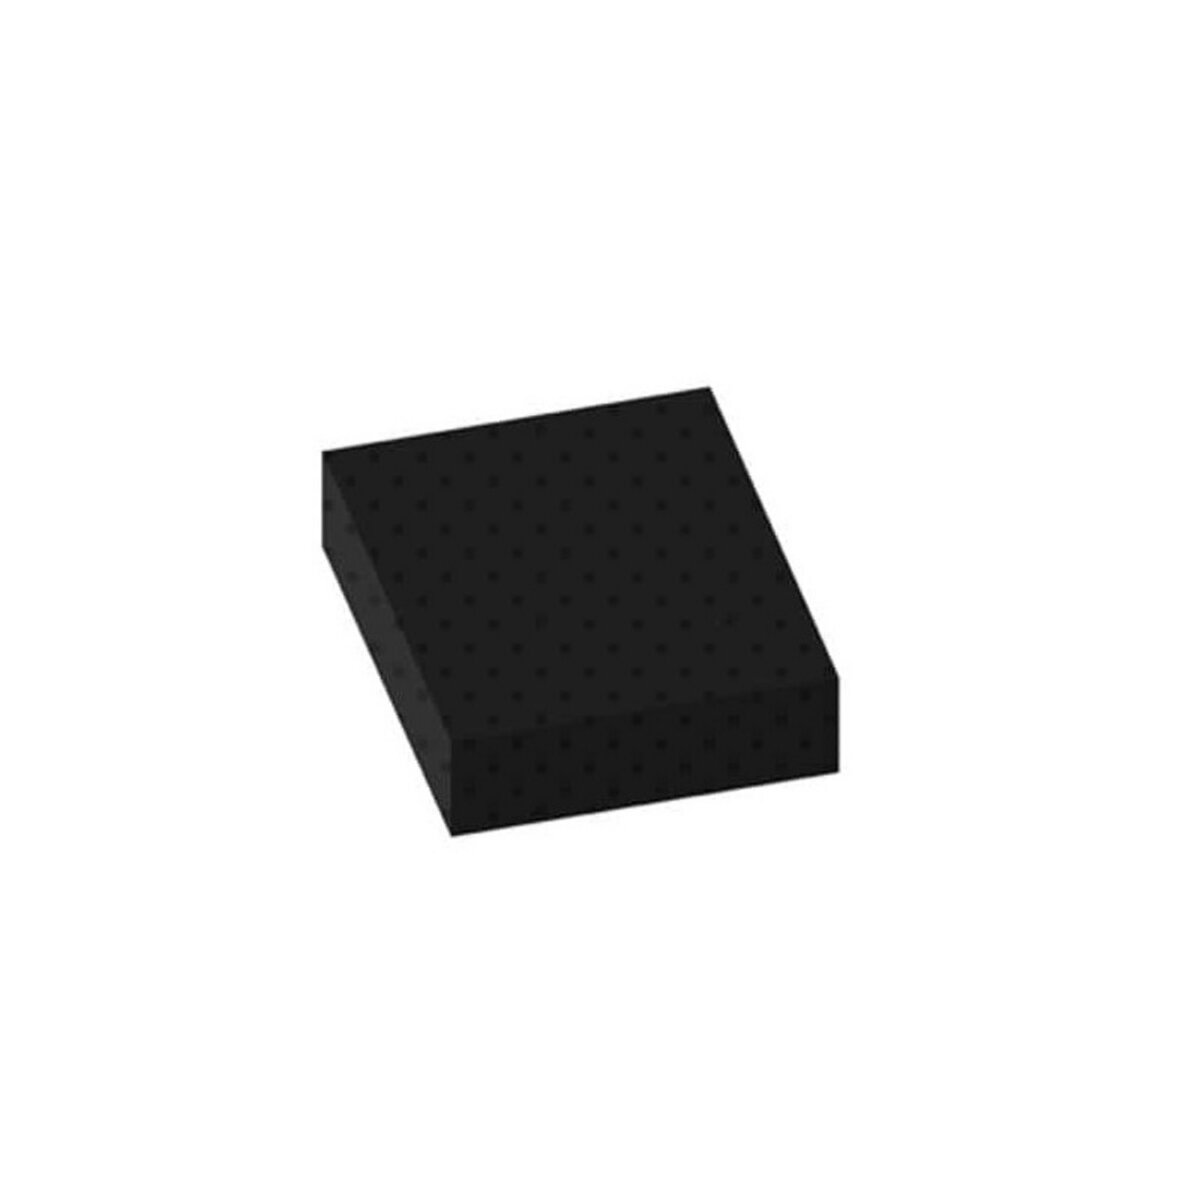 ESPACE-BRICOLAGE Tapis pastilles norme bâtiment noir 100x100cm épaisseur 3mm